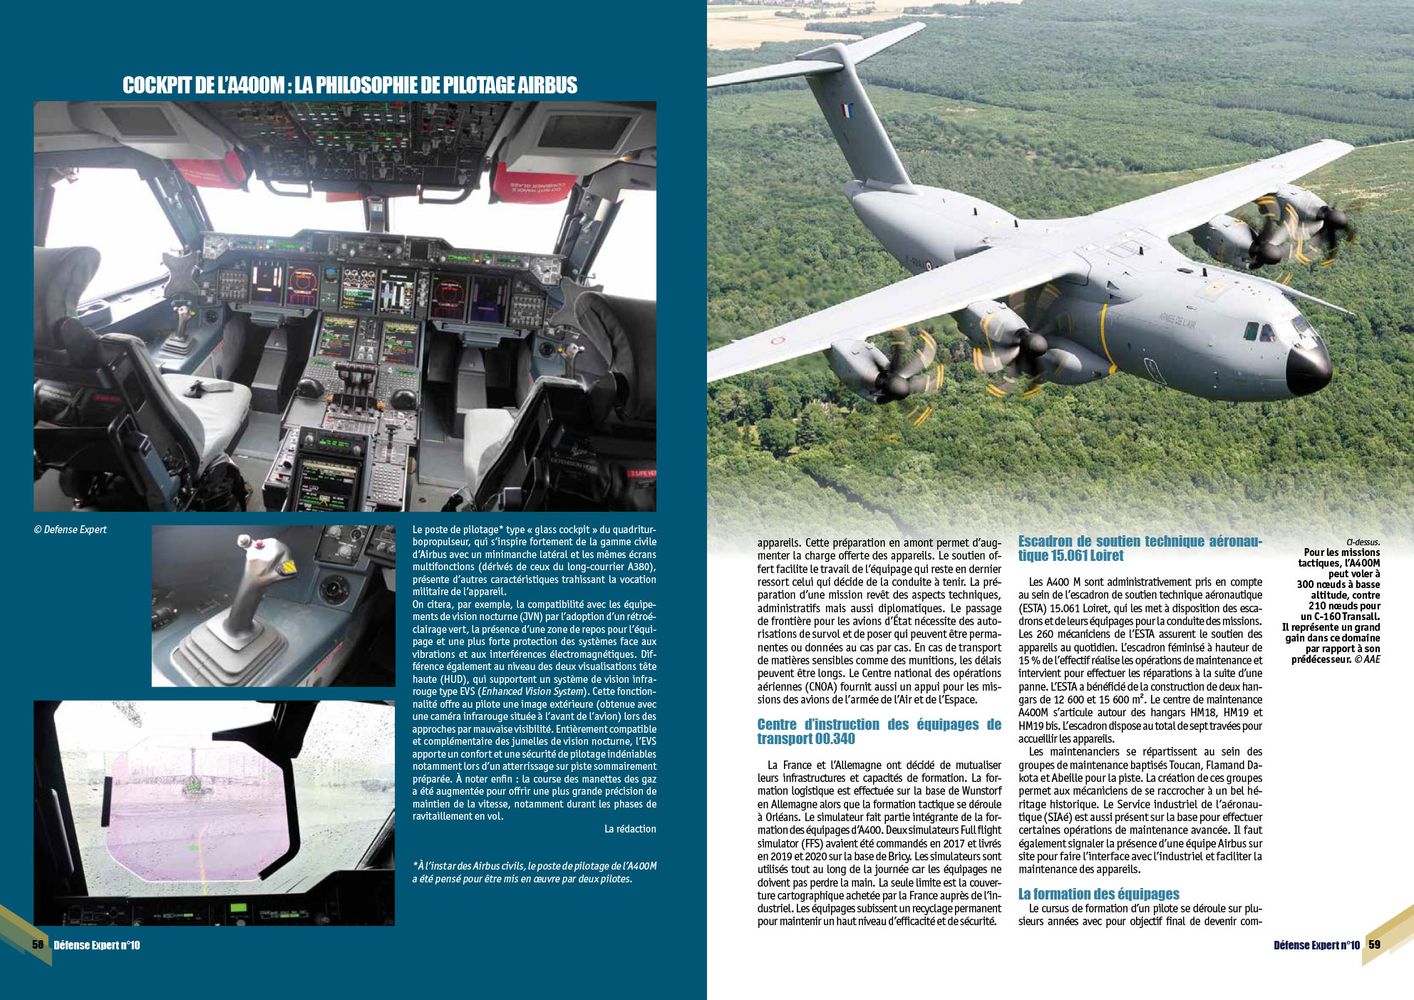 A400 M Atlas - L’escadron 4-61 Béarn reprend du service - page 58 & 59 DE n°10